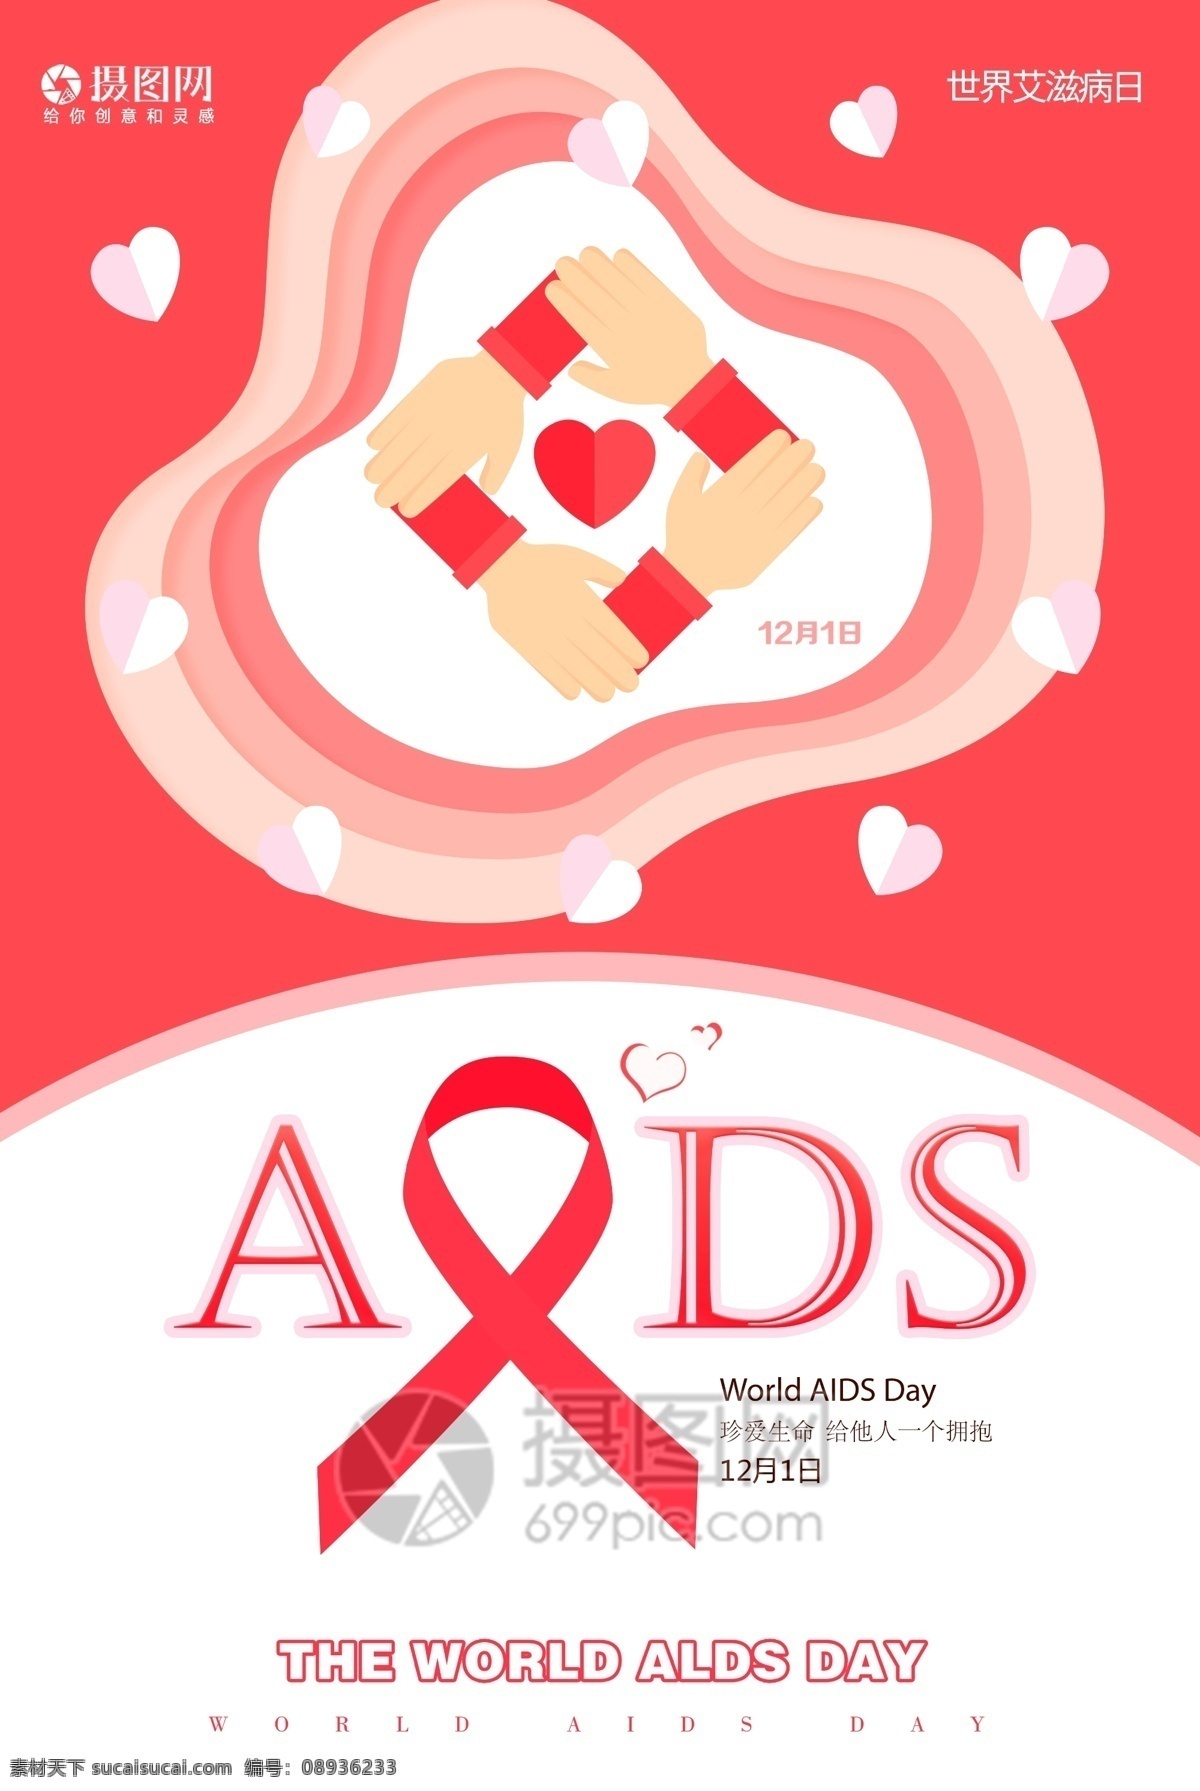 粉红 丝带 世界 艾滋病 日 公益 海报 世界艾滋病日 关爱 为爱发声 珍爱生命 12月1日 防止艾滋病日 活动 爱心 红色 剪纸